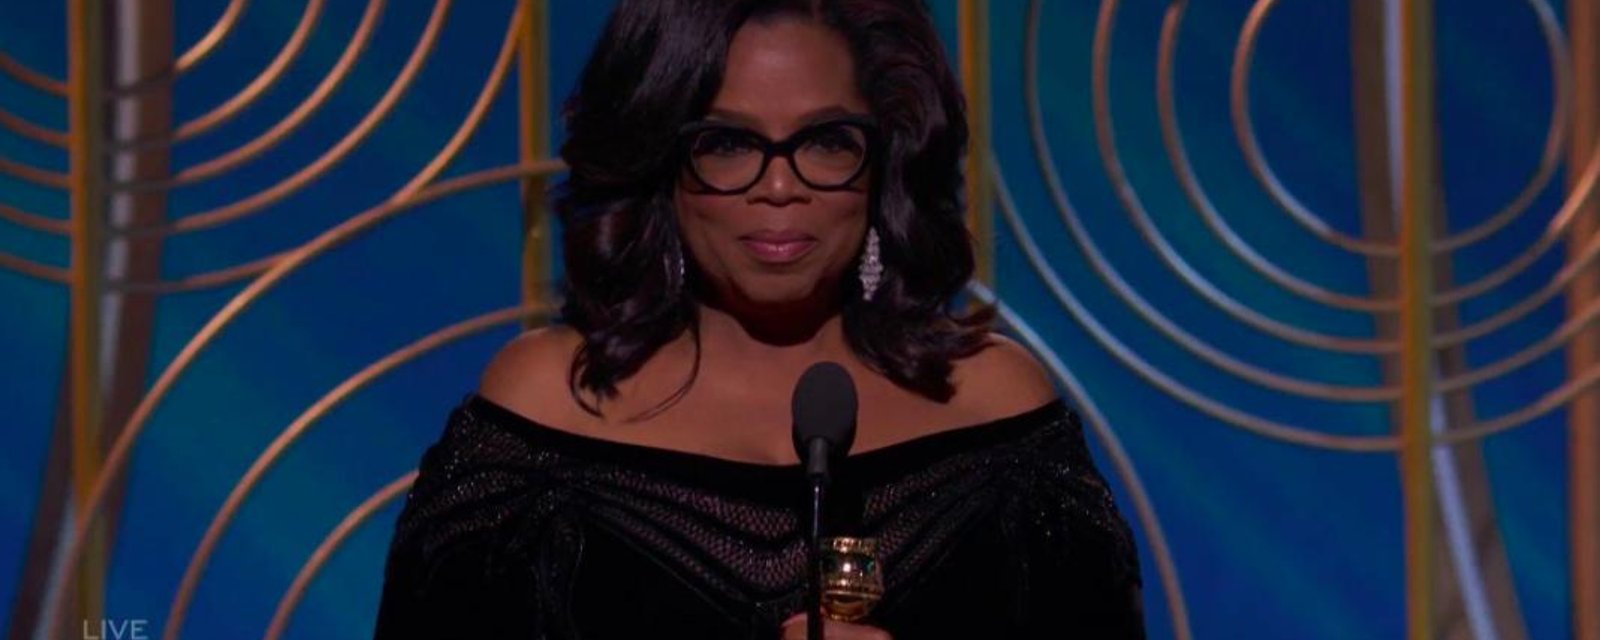 Oprah Winfrey vole la vedette avec le discours le plus incroyable de l'année aux Golden Globes